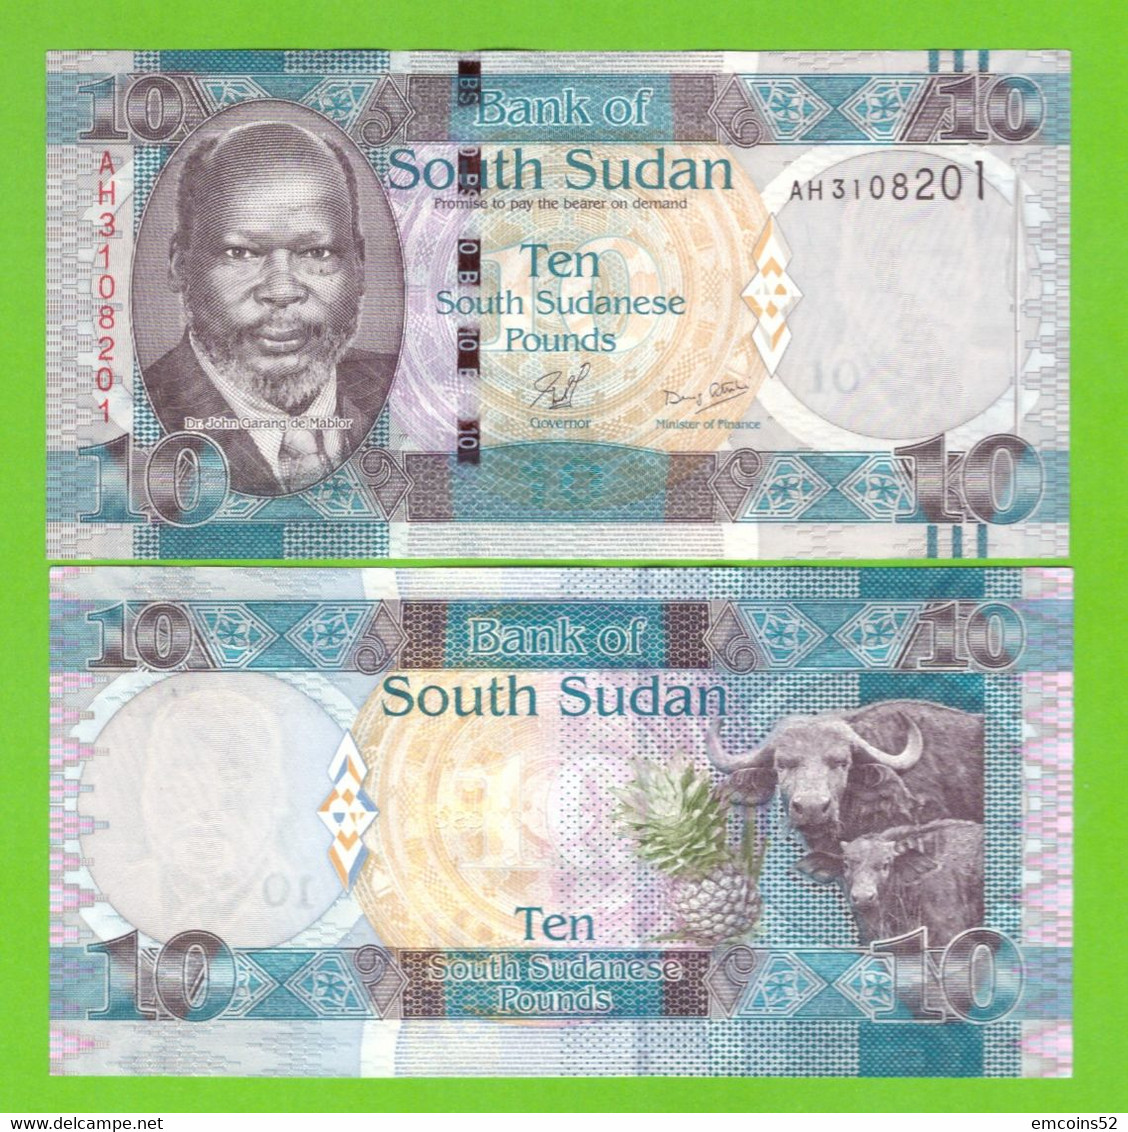 SOUTH SUDAN 10 POUNDS 2011 P-7 UNC - Südsudan